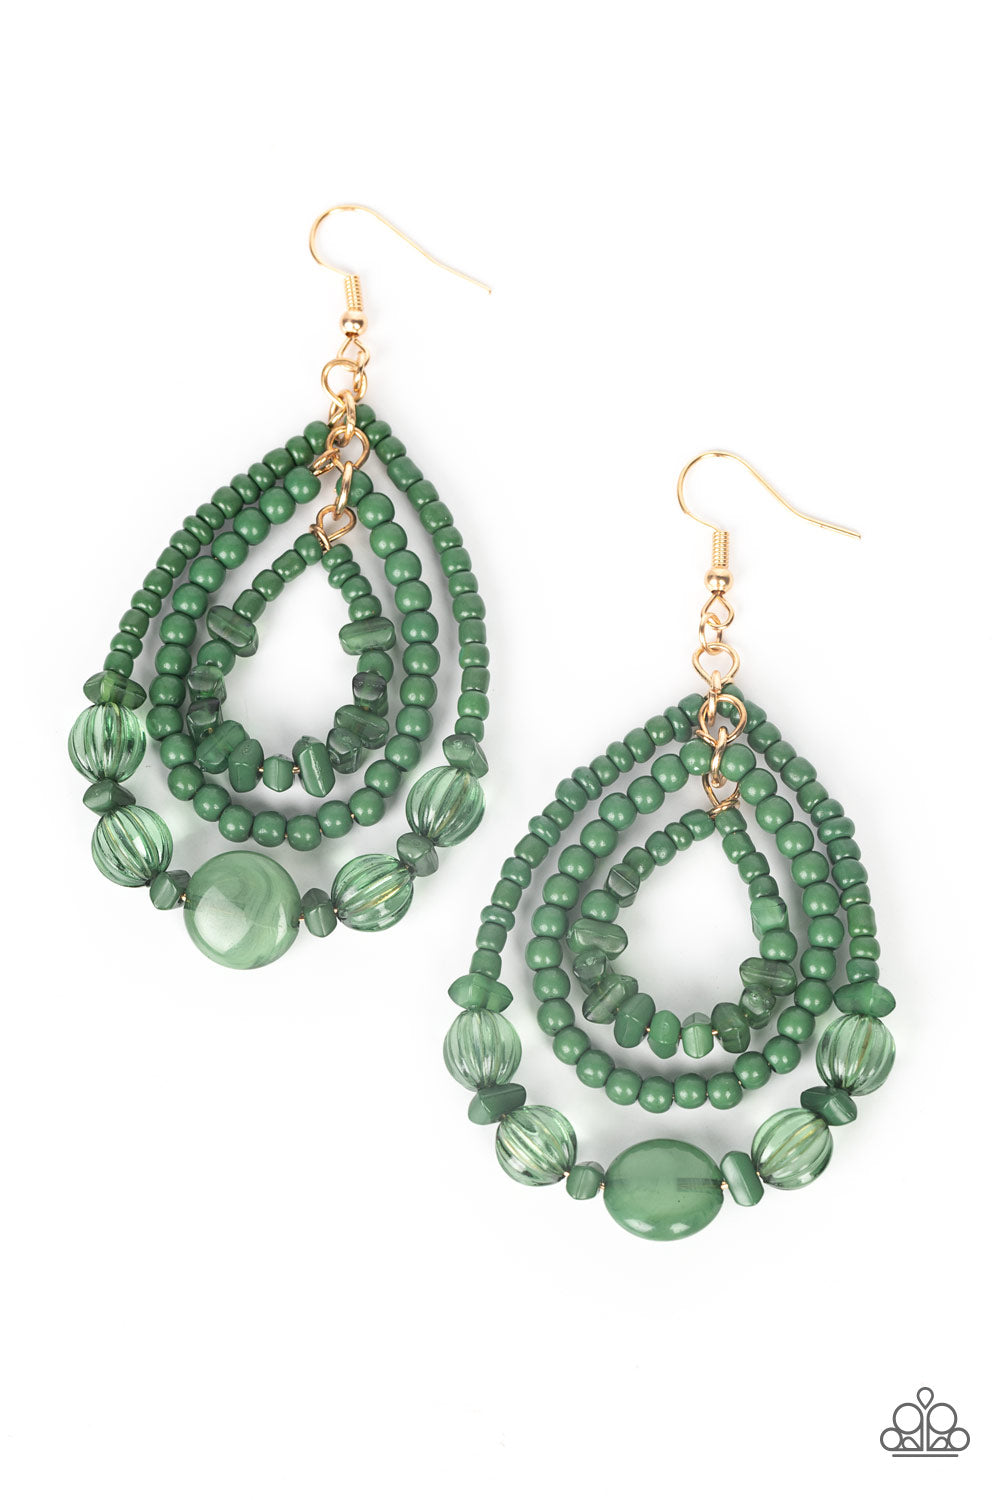 Prana Party - Green earrings